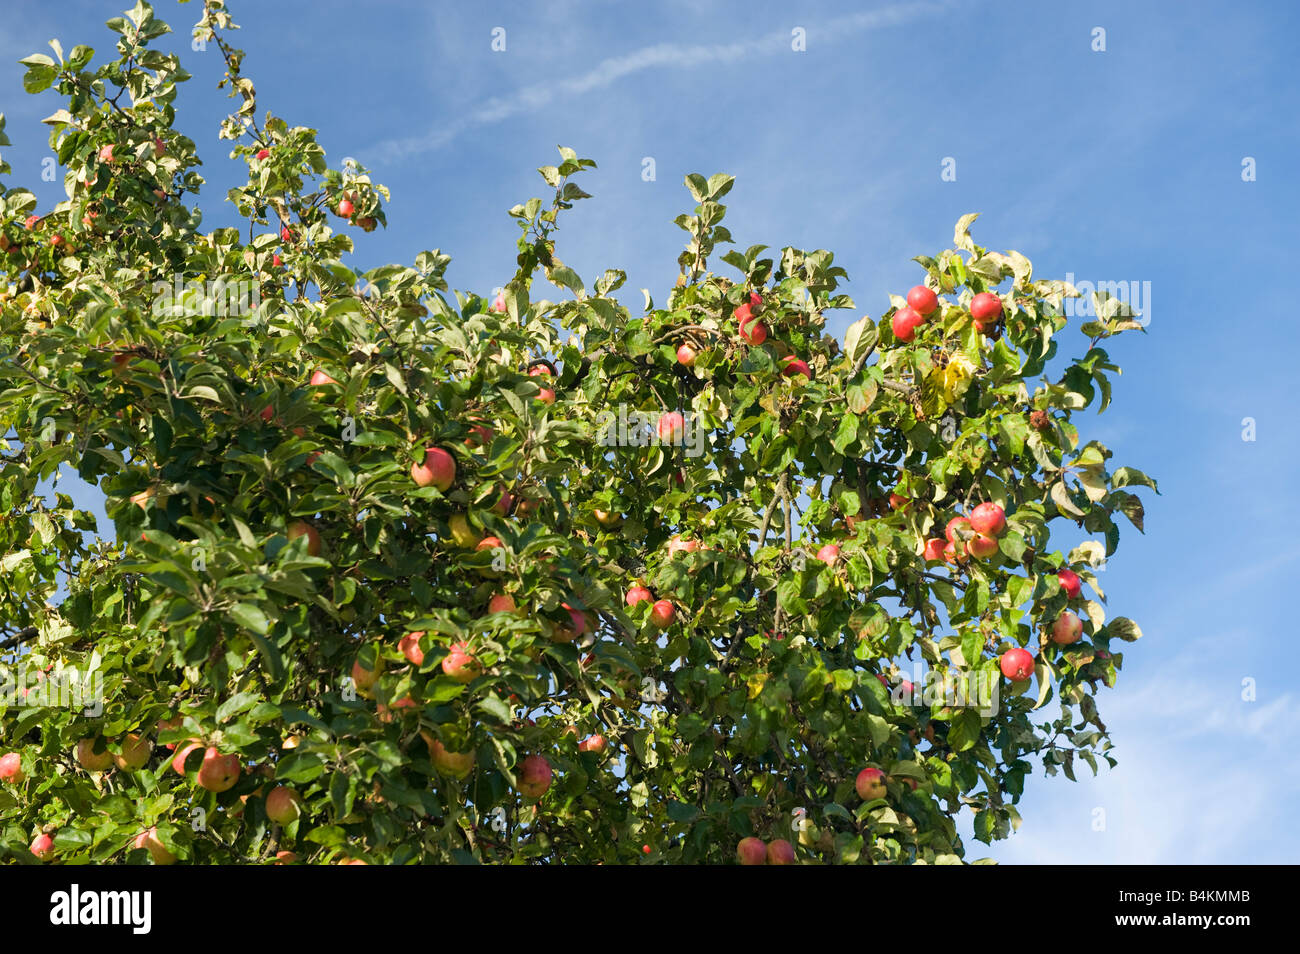 Gran árbol de manzanas con manzanas maduras para la cosecha de manzanas rojas del cielo azul rico gran cosecha jardín jardinero rojo verde fruta amarilla bl Foto de stock